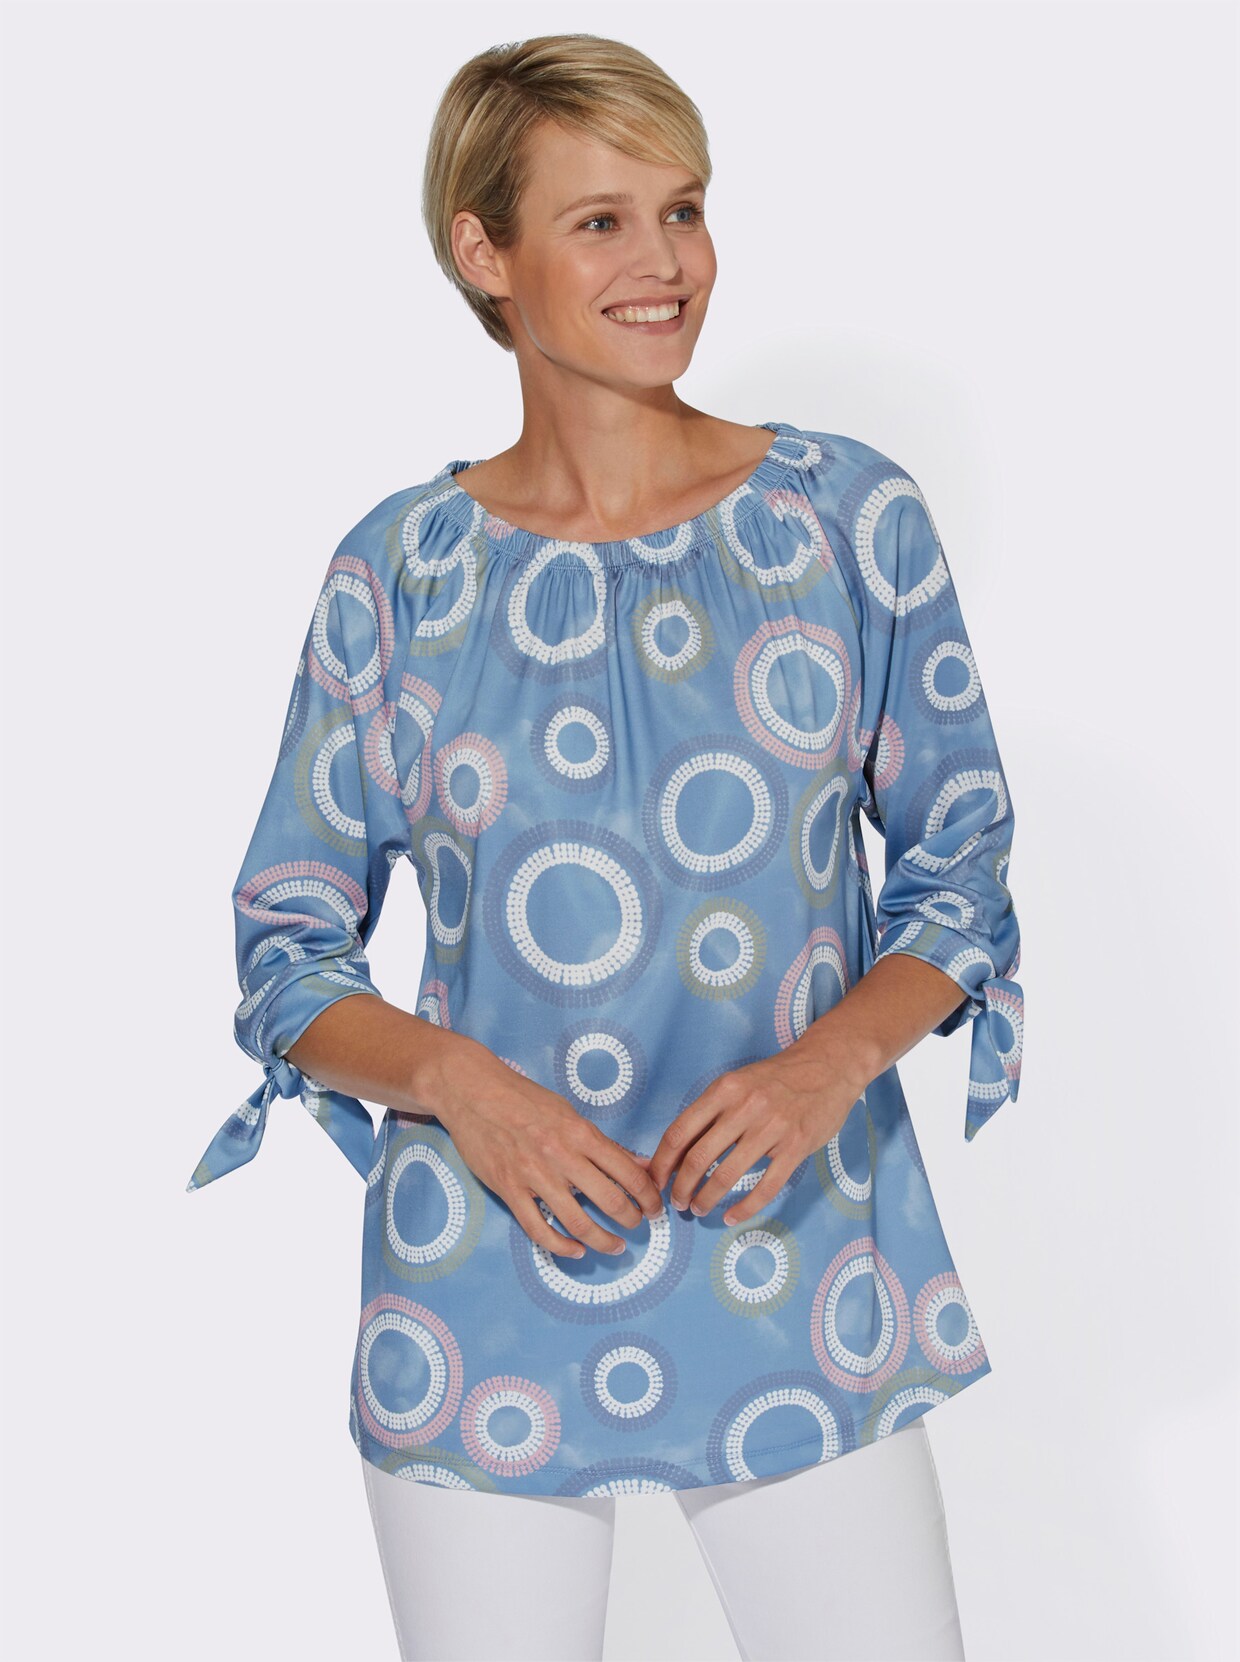 Tuniekshirt - middenblauw geprint